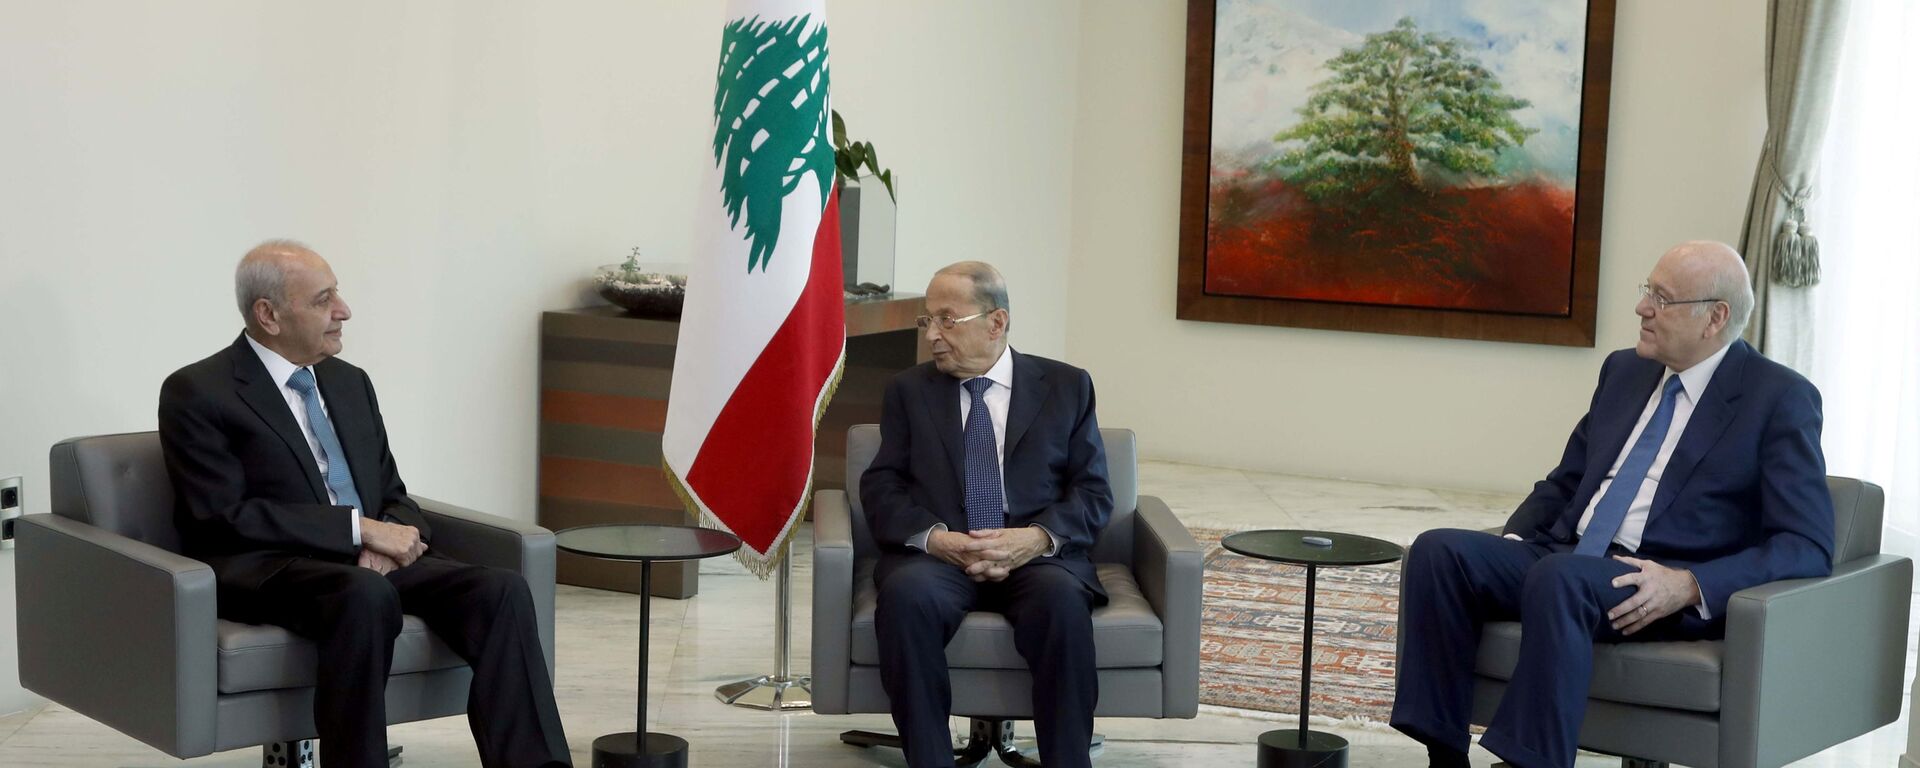  رئيس الحكومة اللبنانية نجيب ميقاتي يلتقي مع الرئيس اللبناني ميشال عون في قصر بعبدا، لبنان 13 سبتمبر 2021  - سبوتنيك عربي, 1920, 24.01.2022